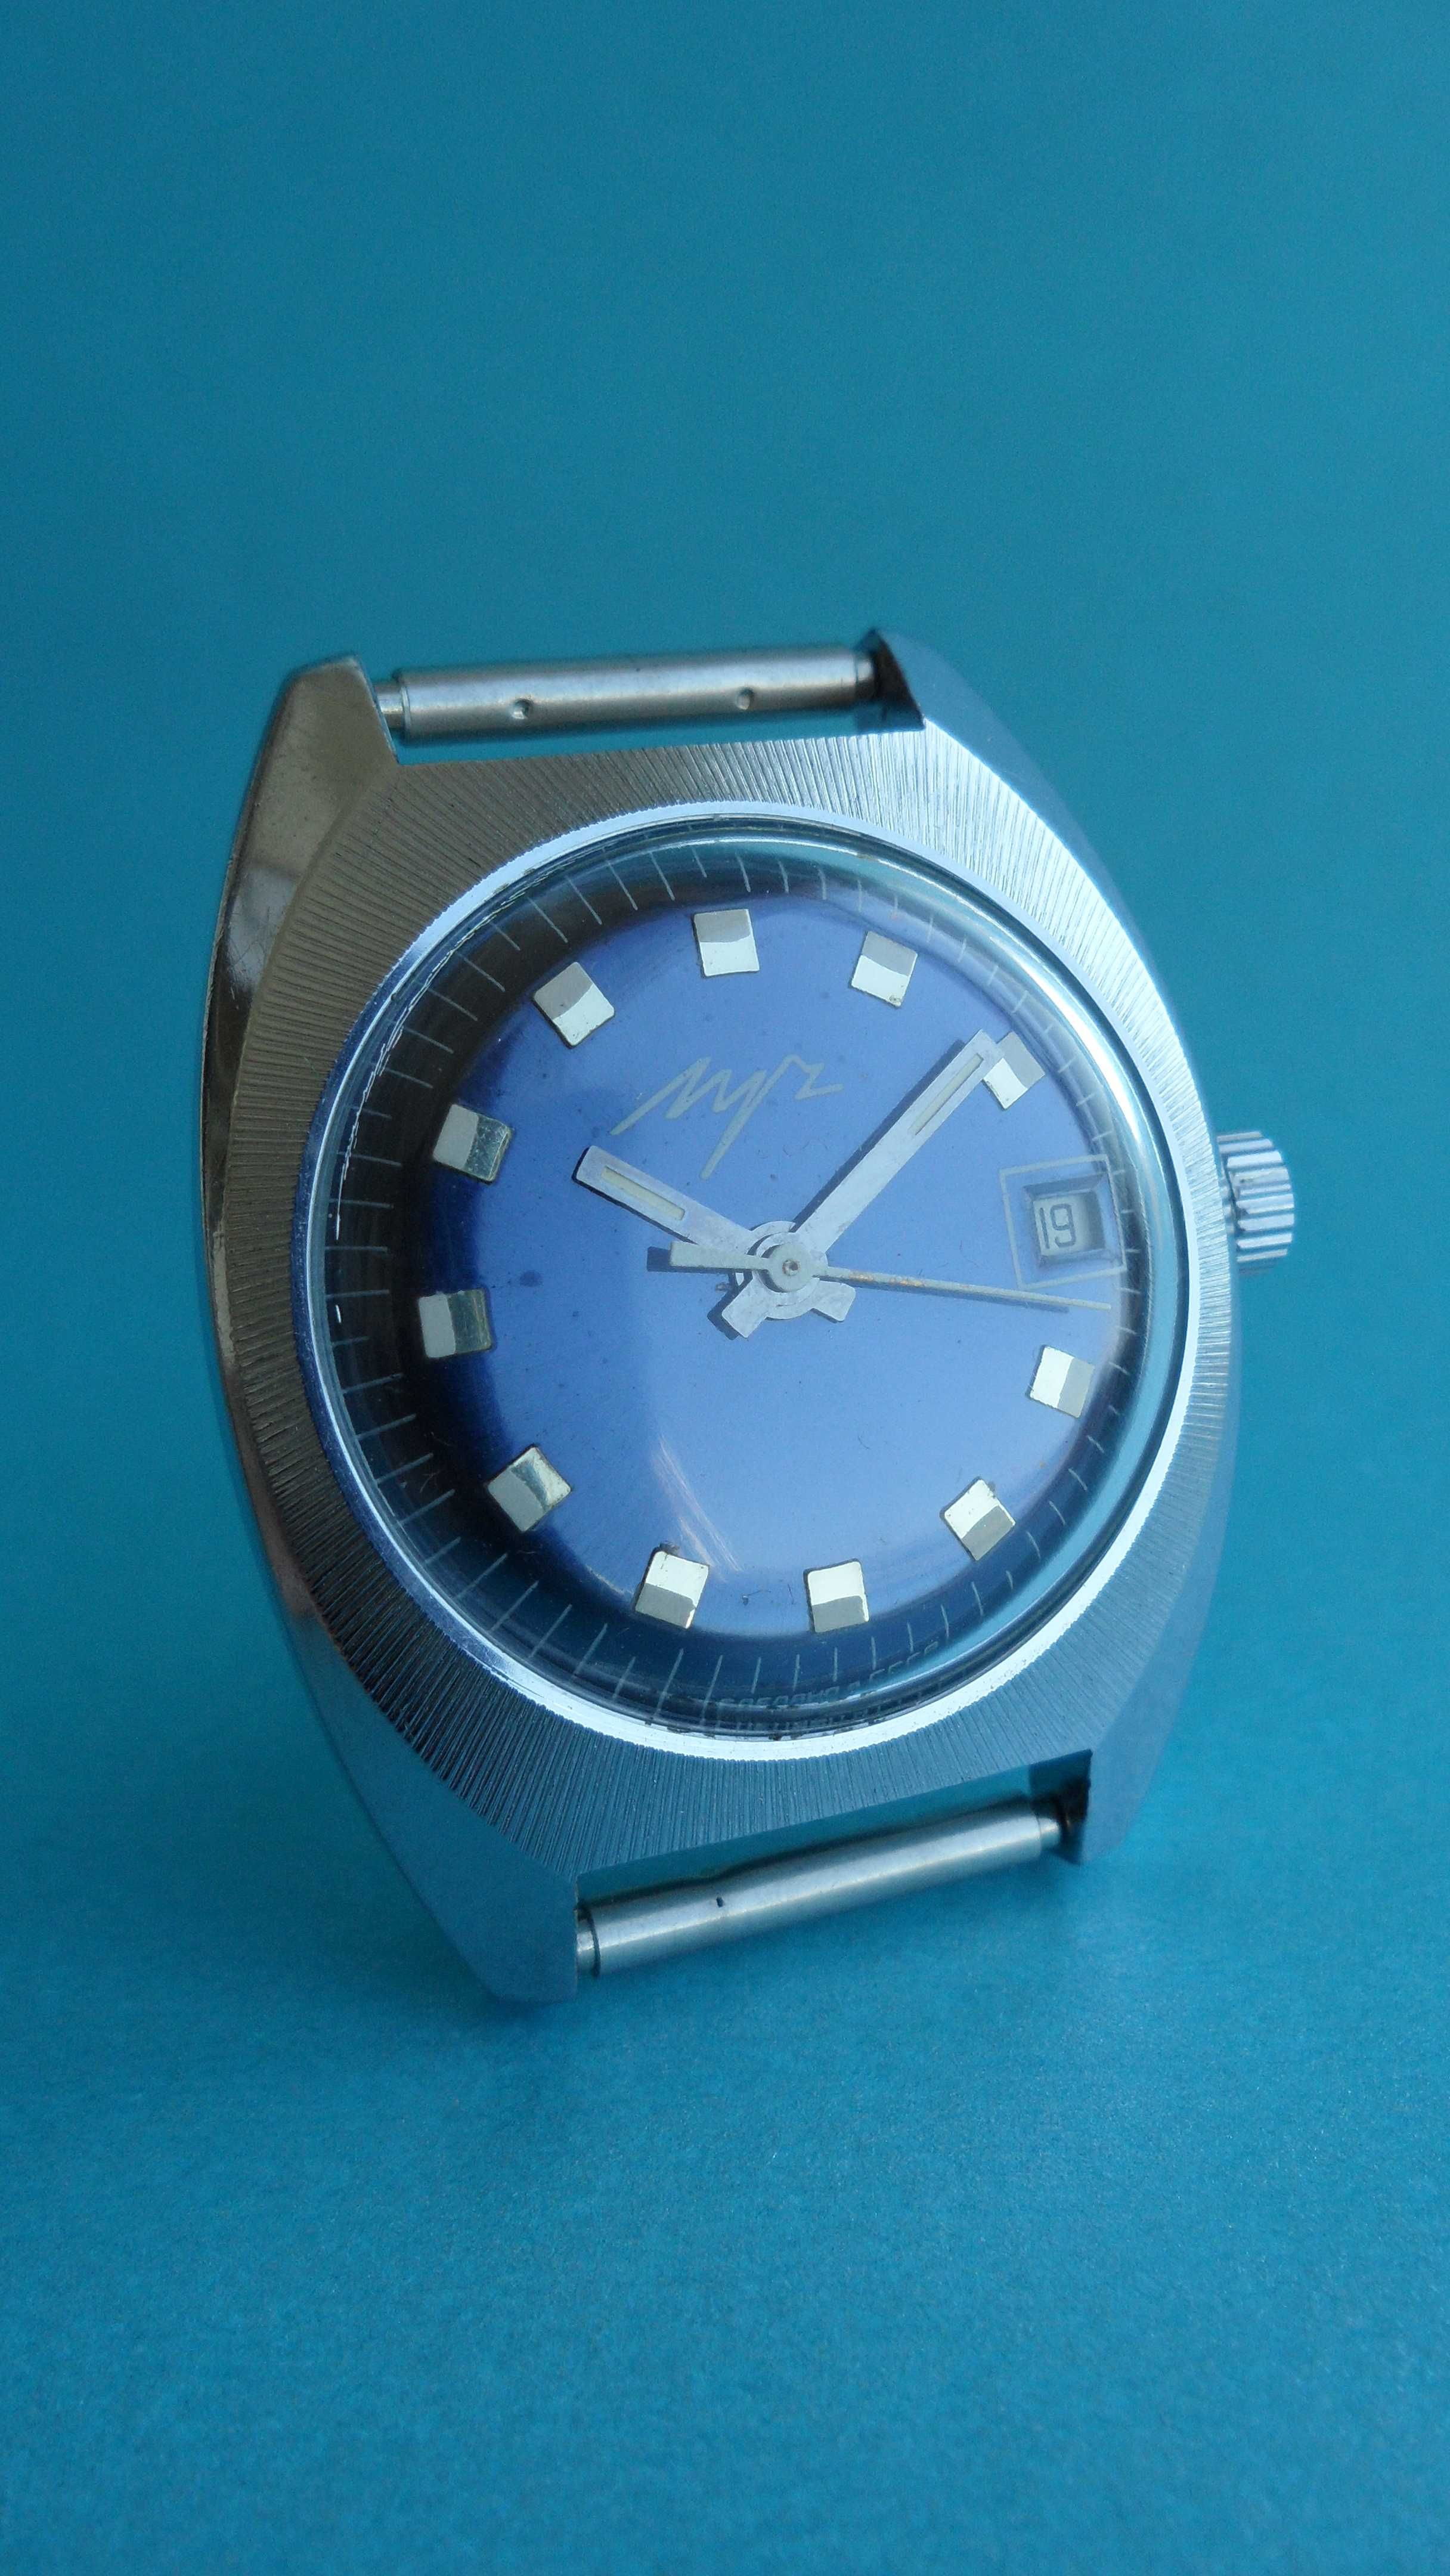 СССР 1974г., часы Луч «БОЧКА» с лучевым сечением корпуса, механика.